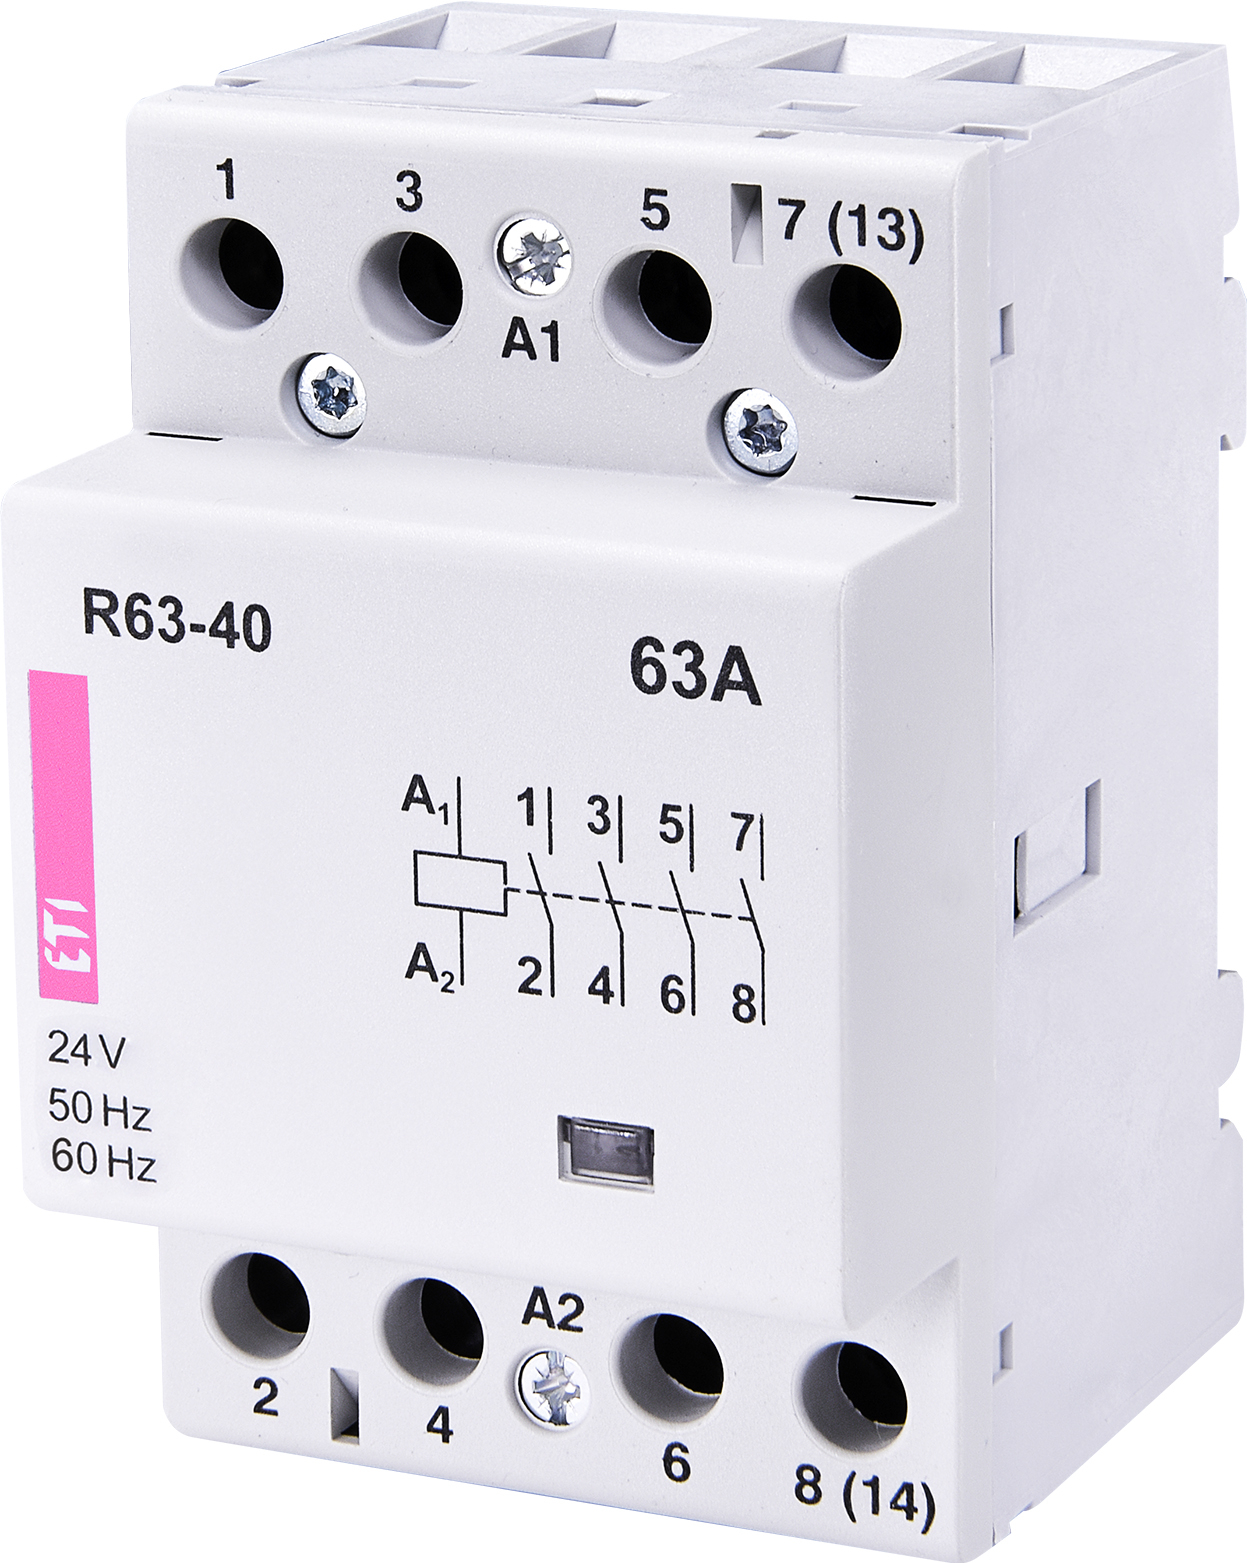 R 63-40 24V modular contactor